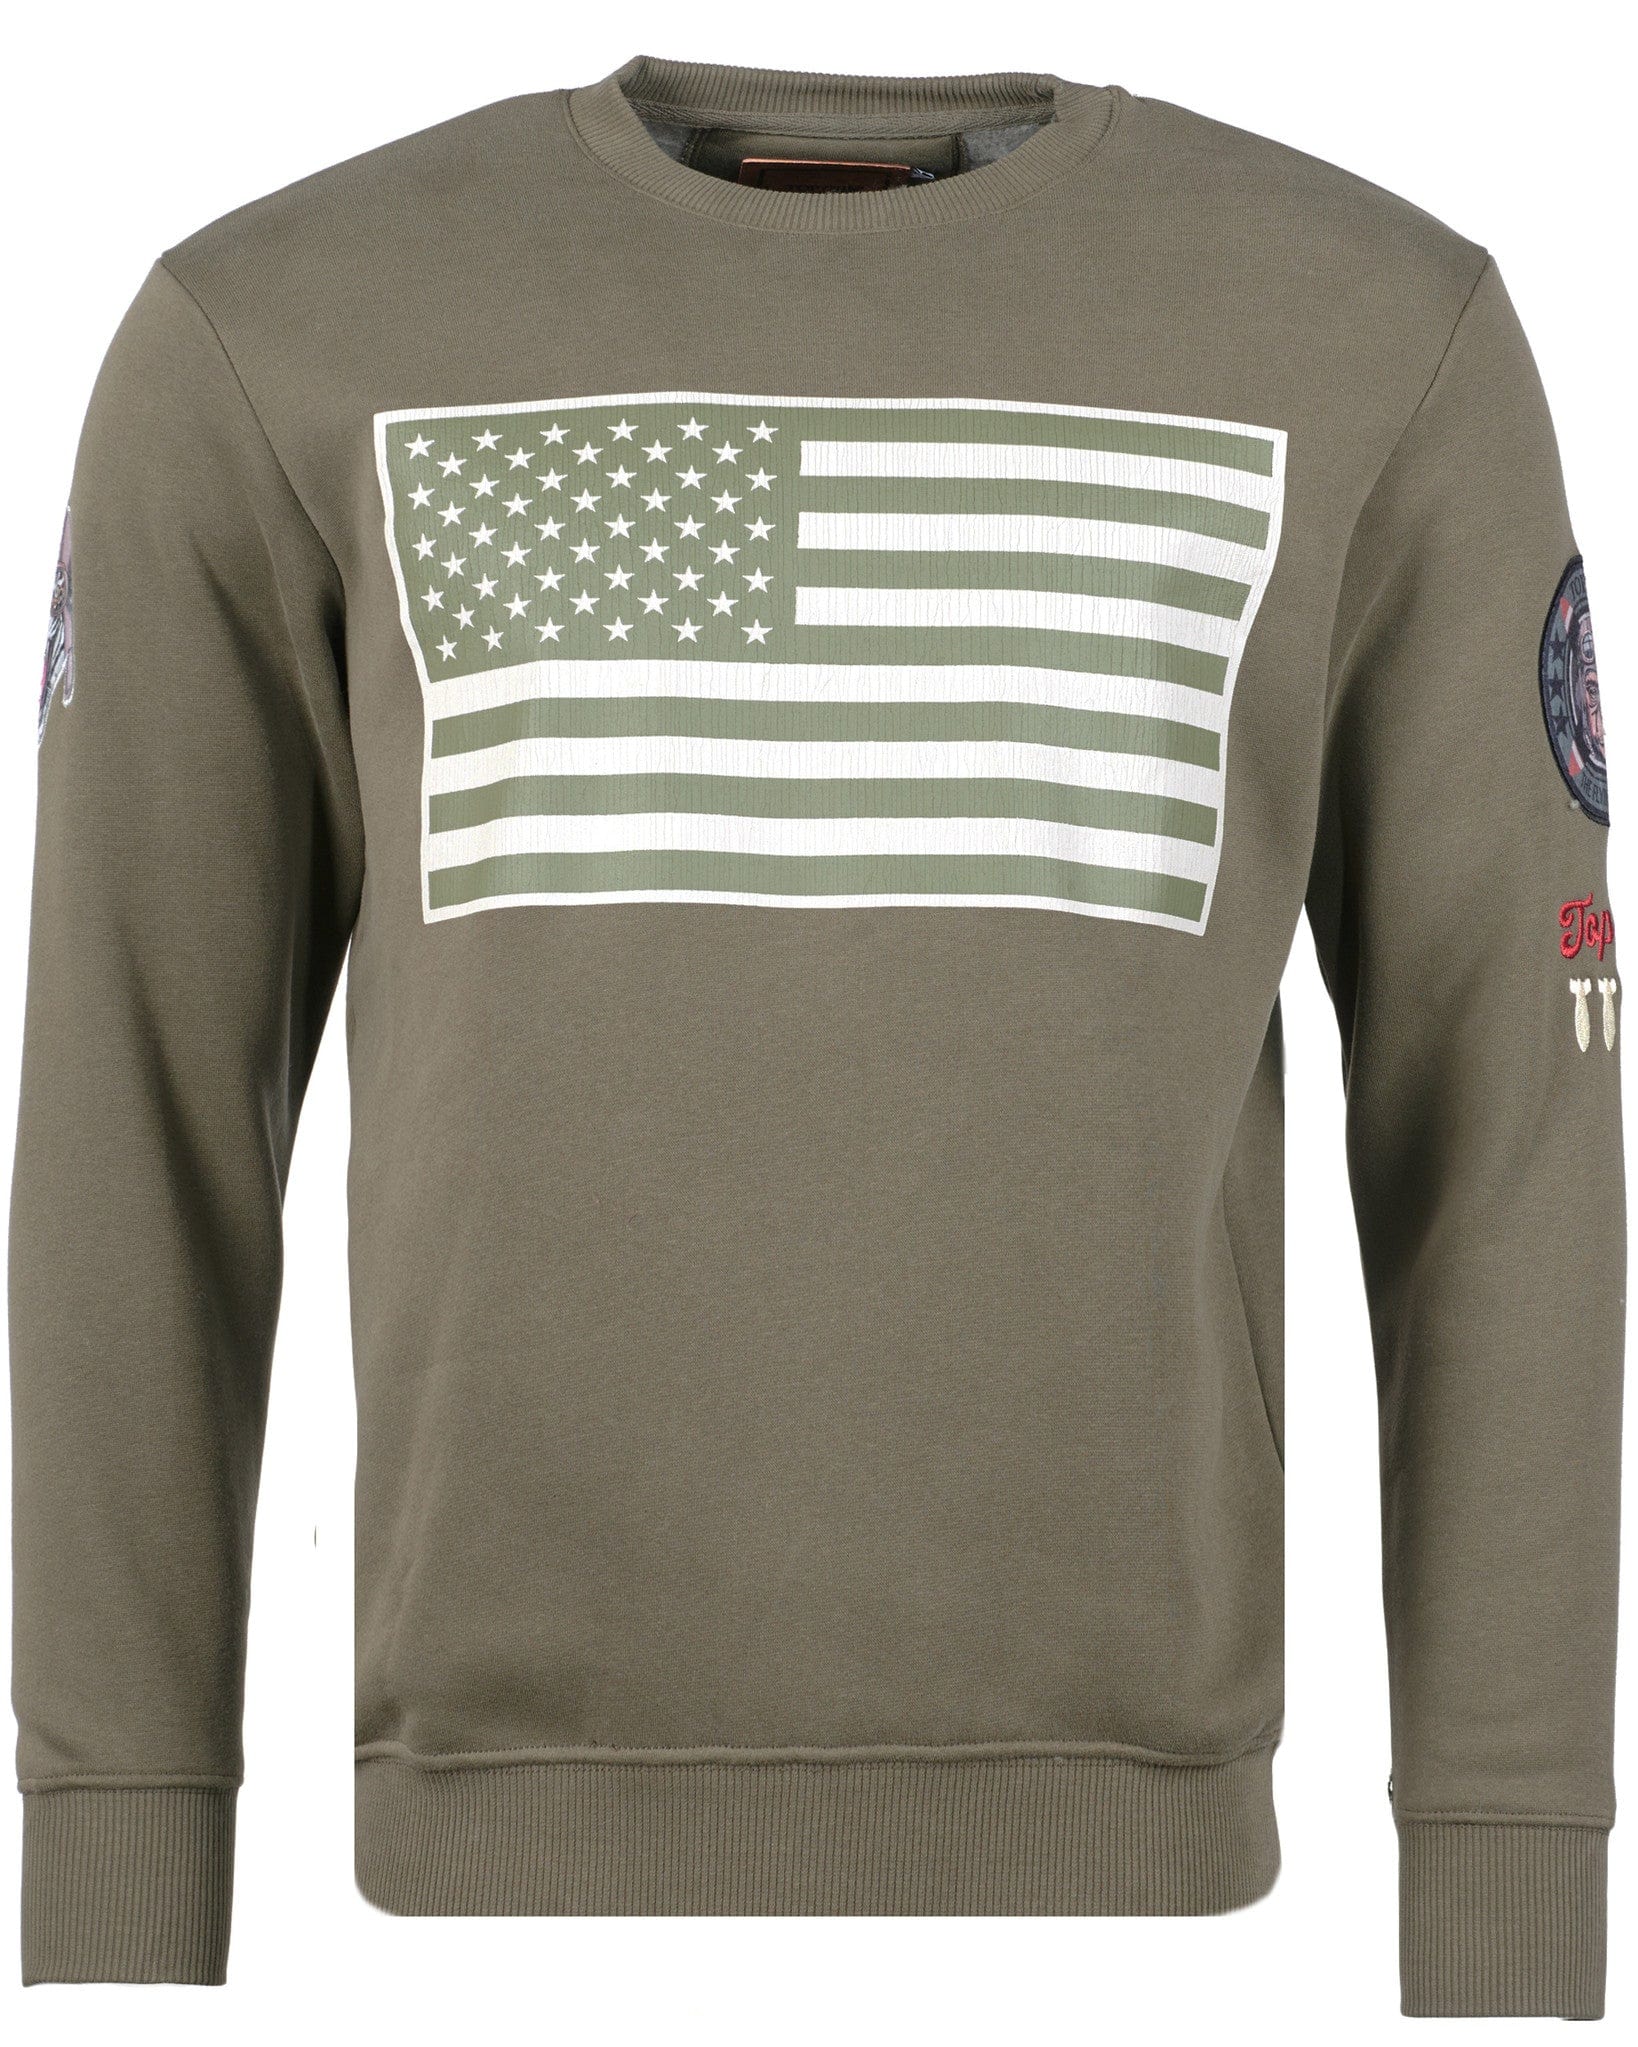 Top GunSweatshirt round neck "US Flag" Army